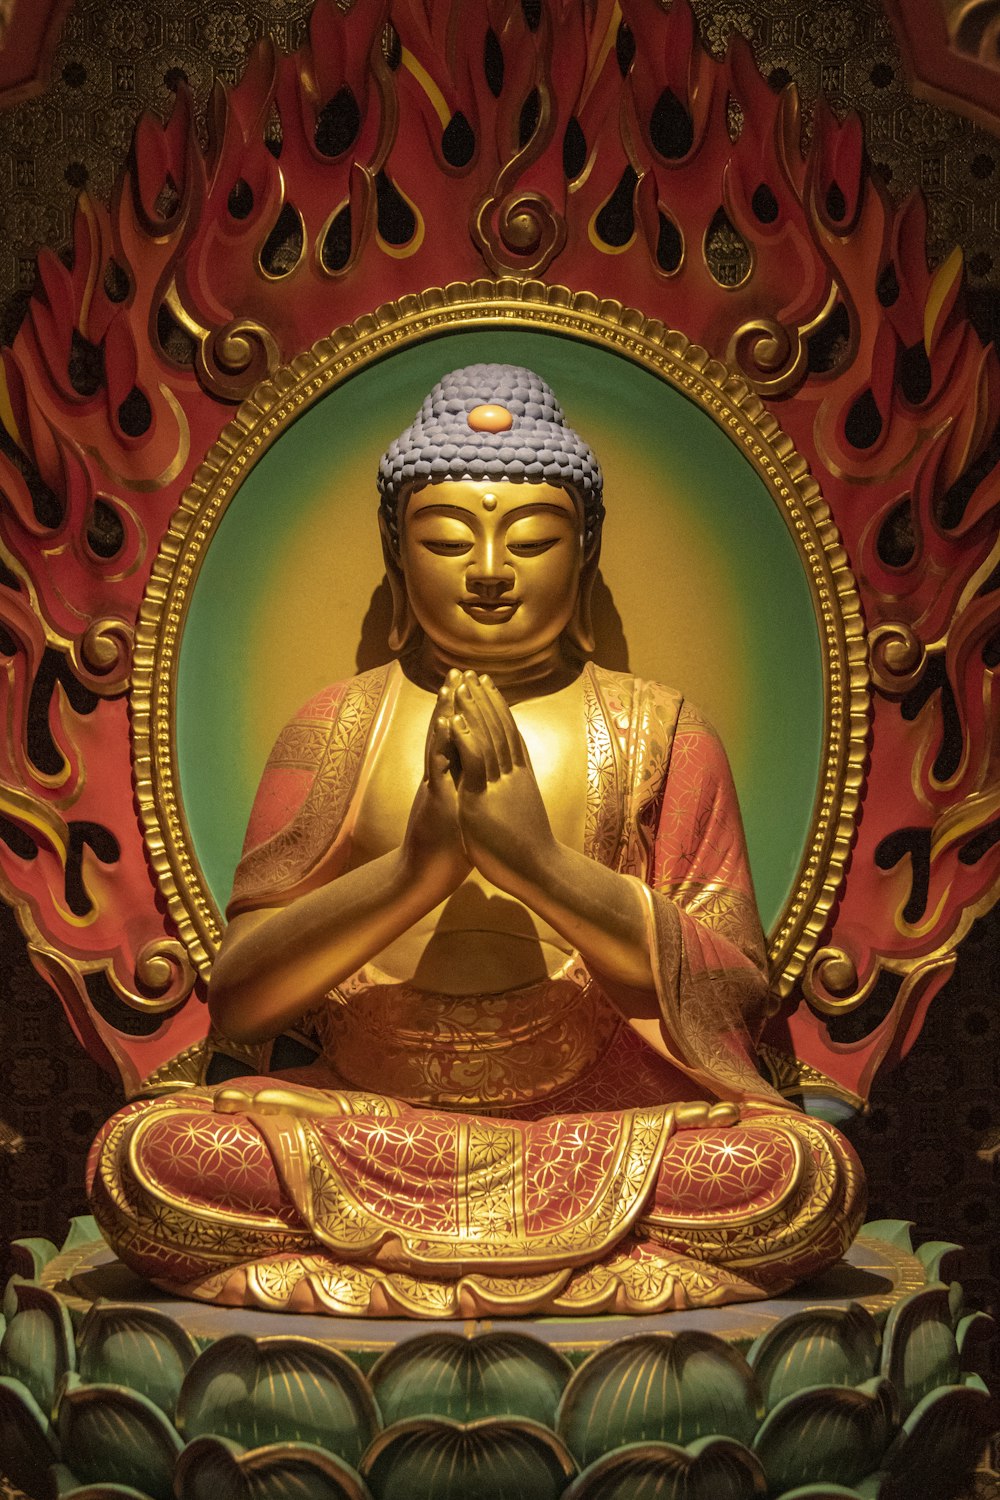 Buddha Wallpapers: Free HD Download [500+ HQ] | Unsplash